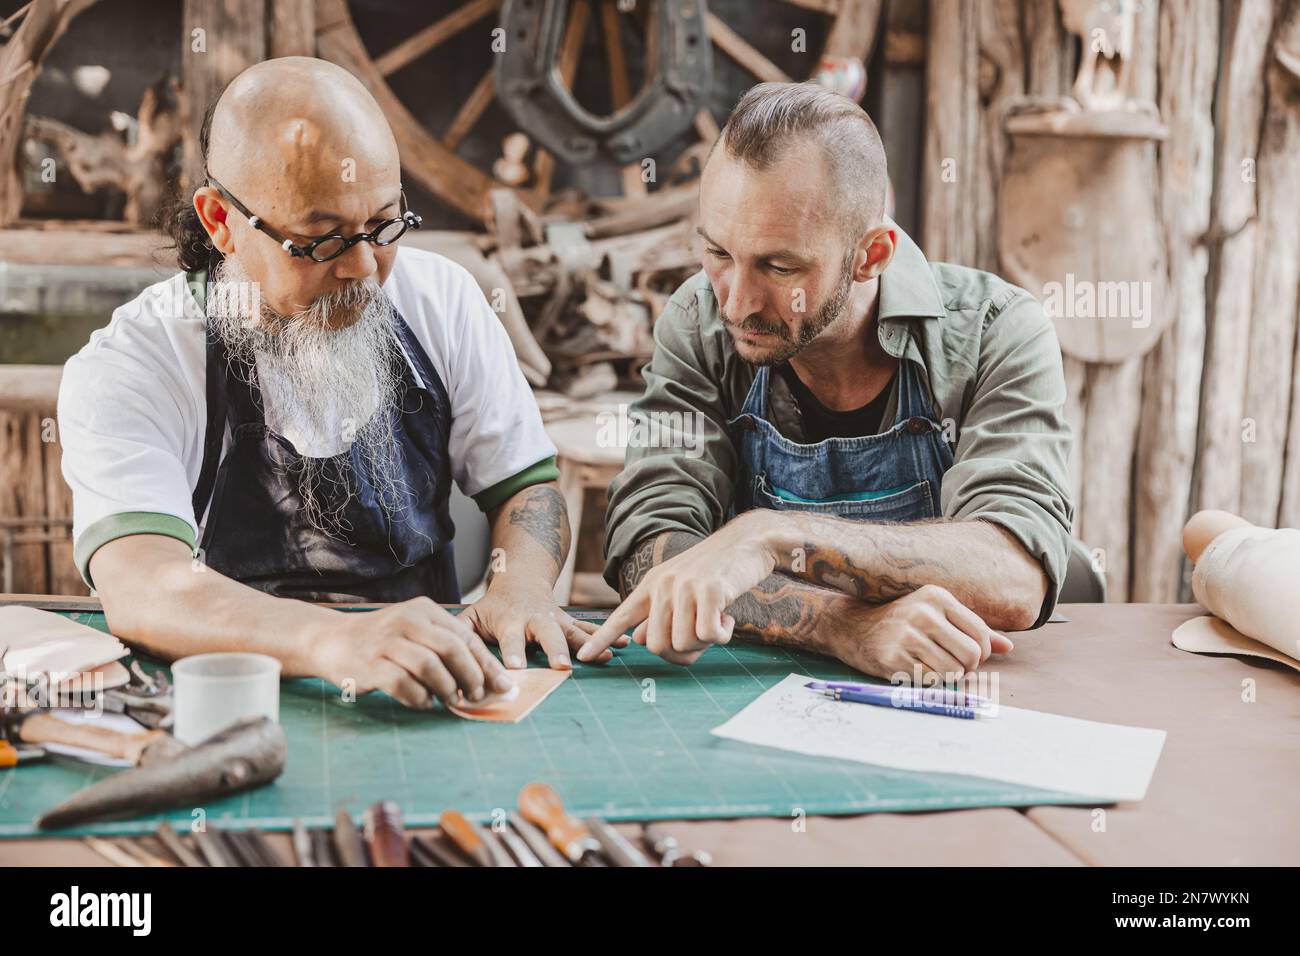 Meister des Lederpersonals, unterrichtet und trainiert jungen Mann für die Herstellung handgefertigter Ledertaschen Stockfoto